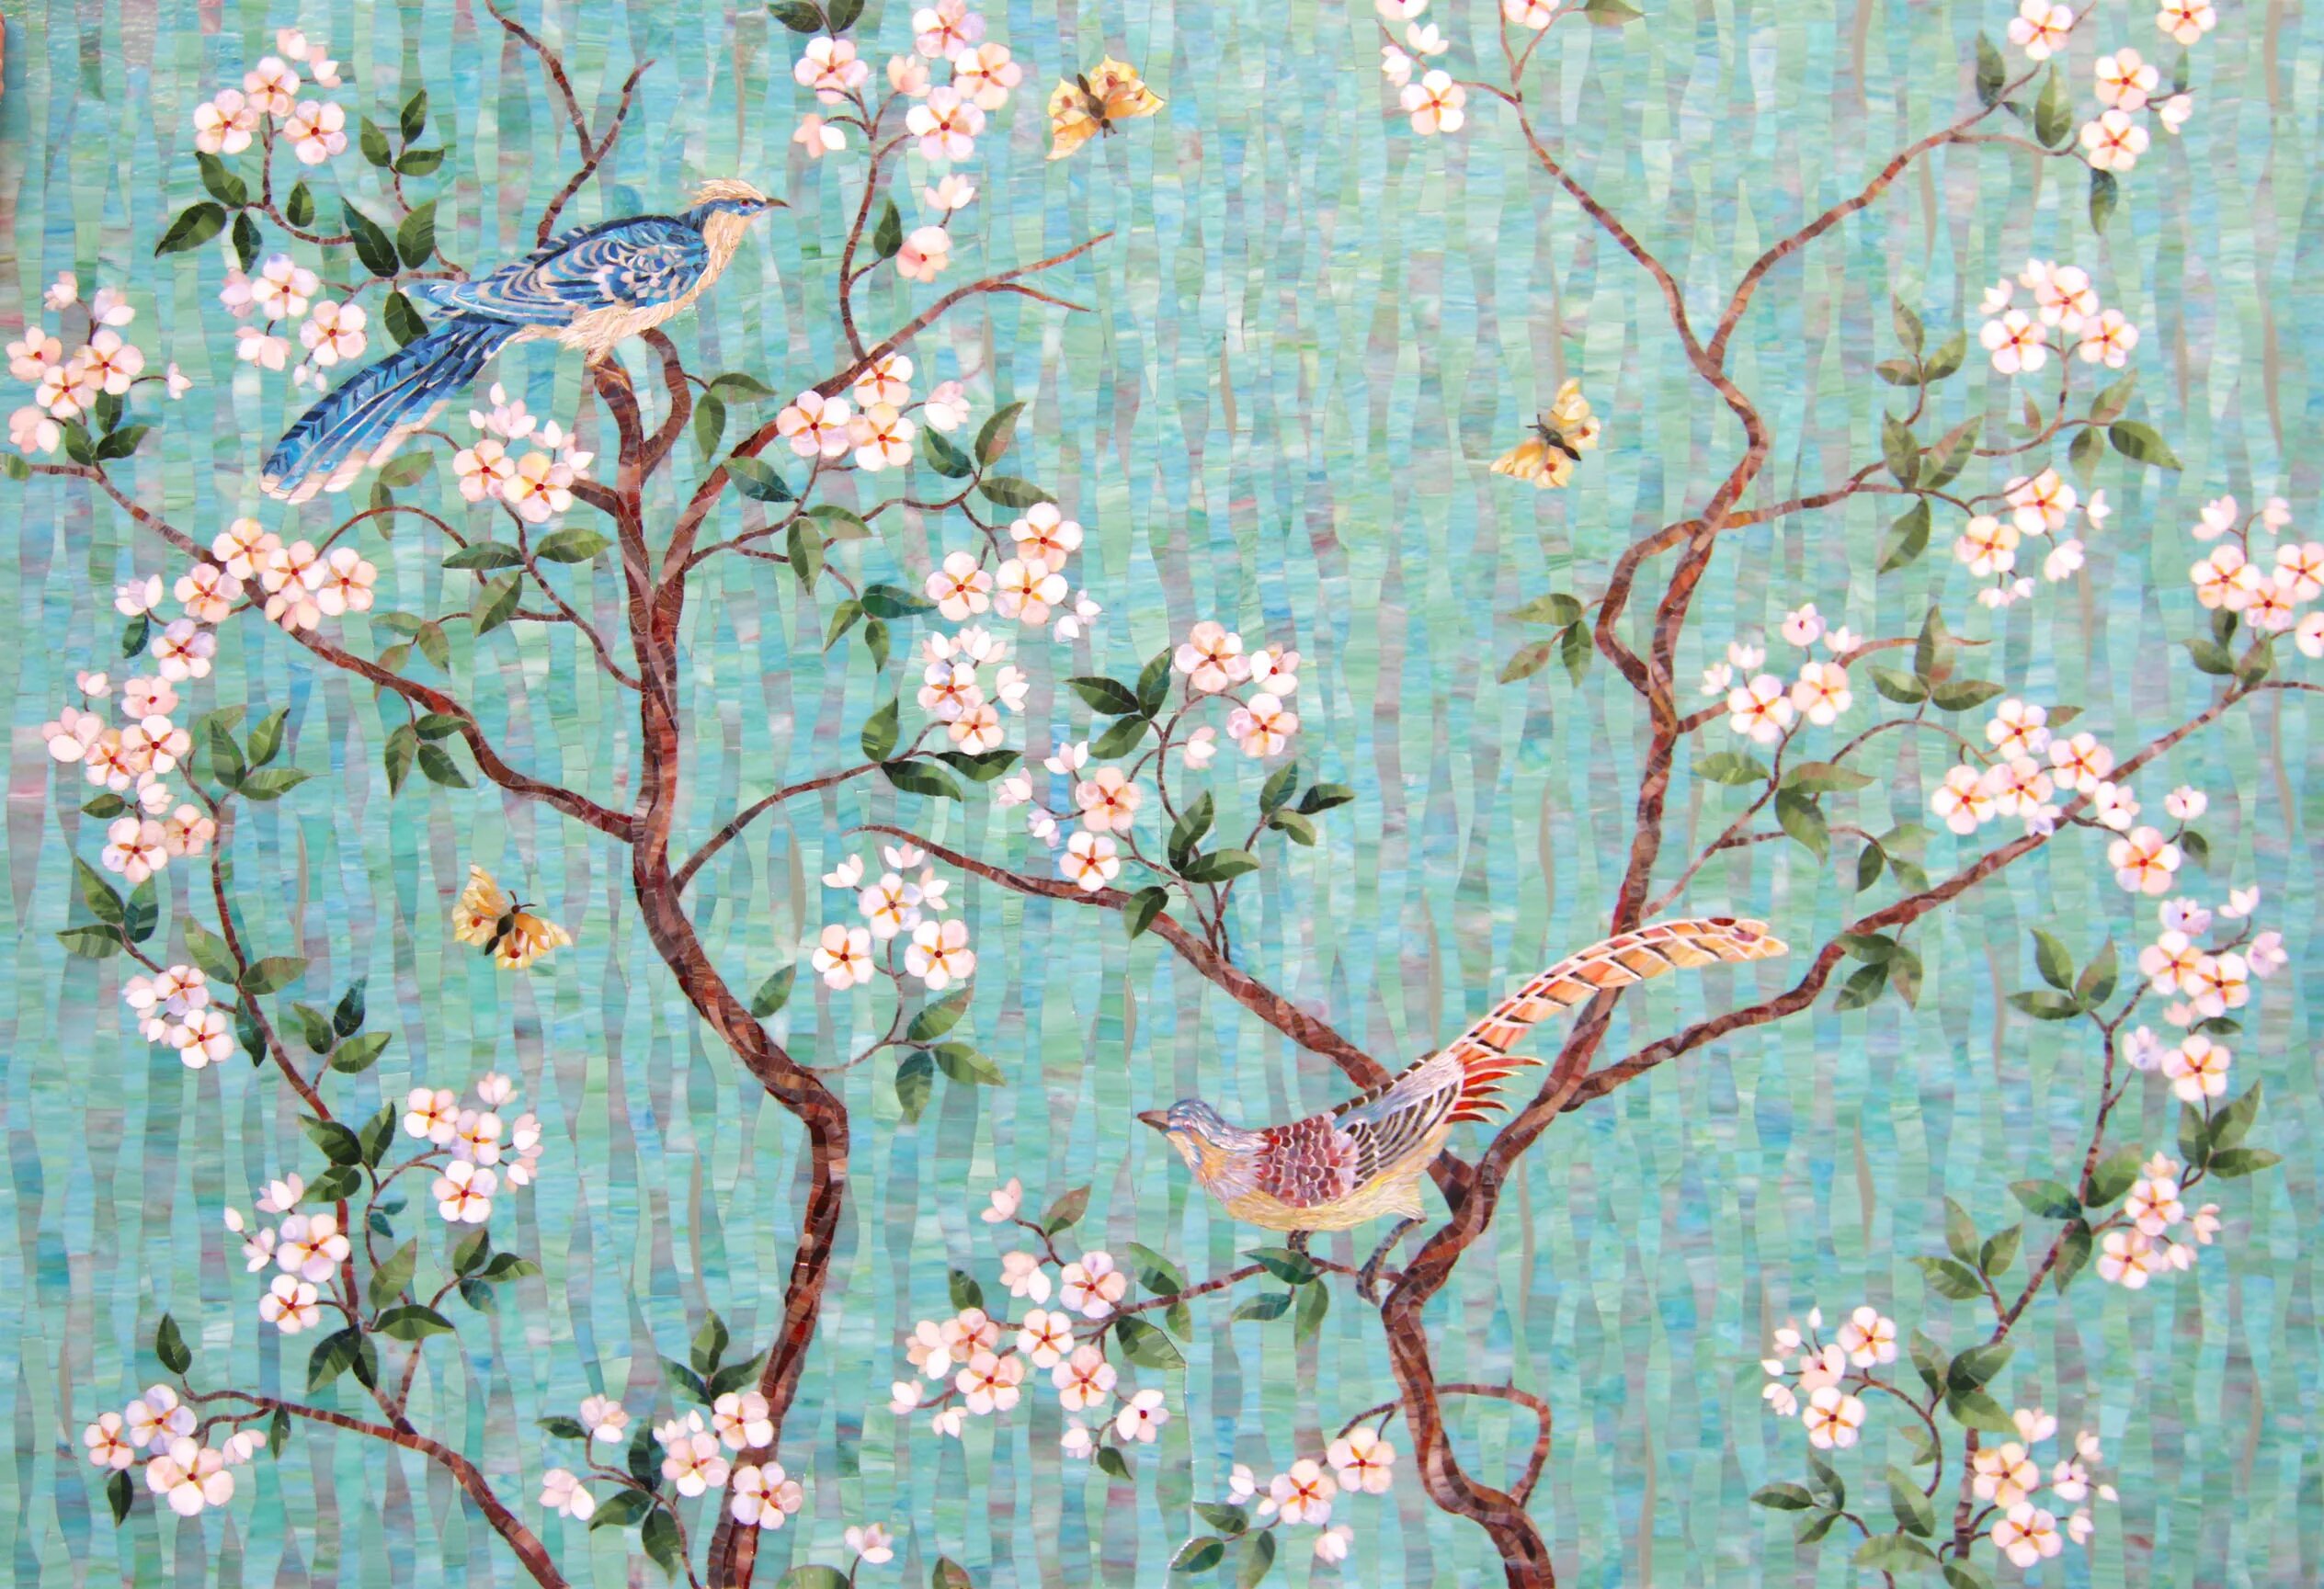 Birds theme. Панно "птицы". Обои с птицами. Мозаичное панно птички. Мозаика цветы и птицы.